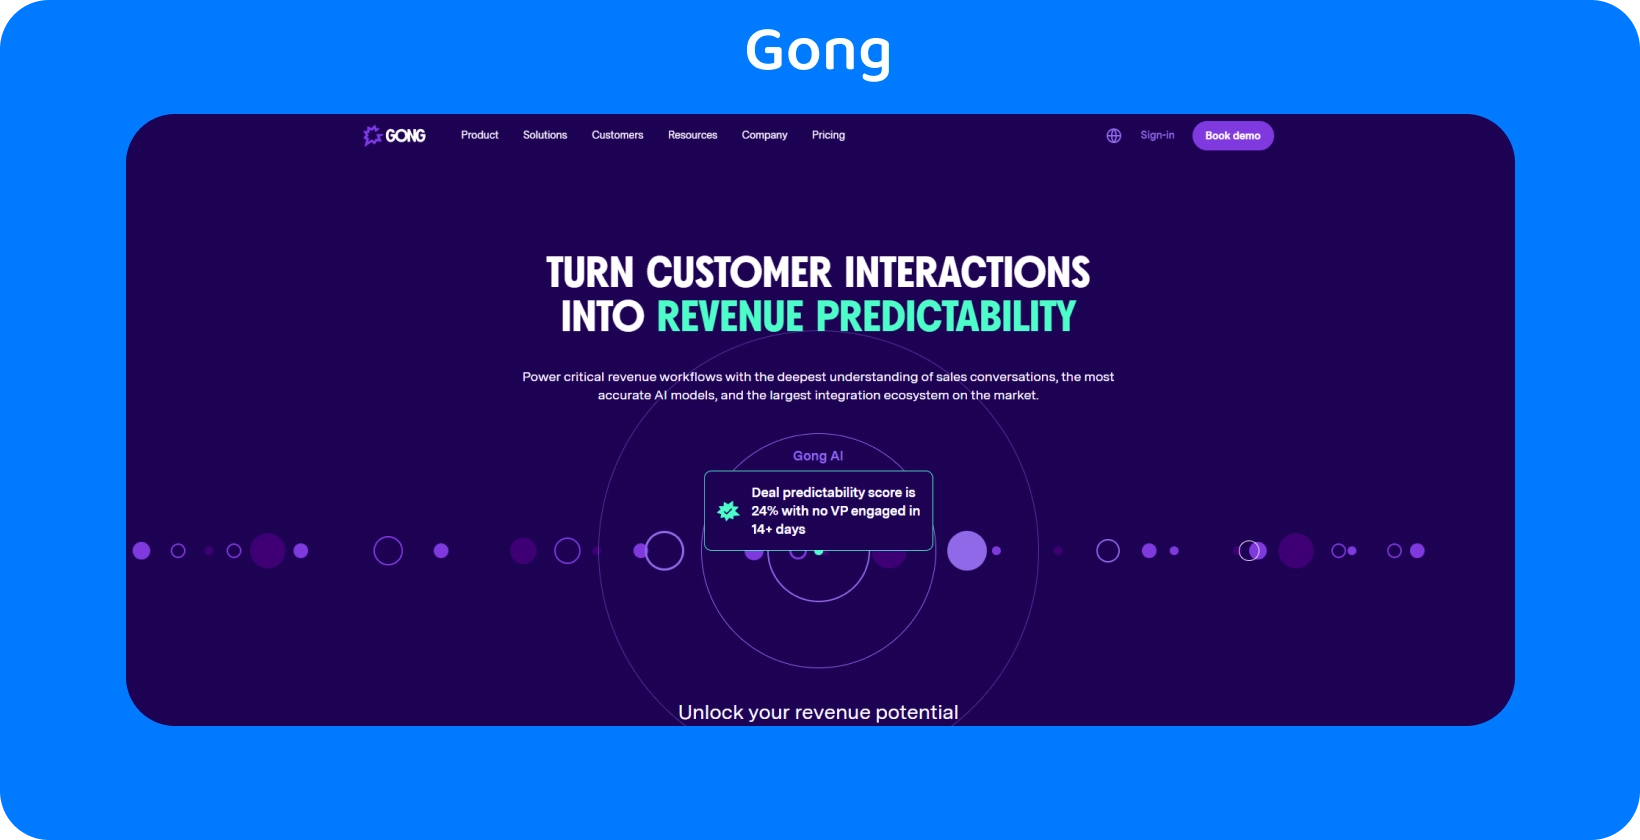 واجهة Gong تسلط الضوء على تحويل تفاعل العملاء إلى إمكانية التنبؤ بالإيرادات ، باستخدام AI للمبيعات.